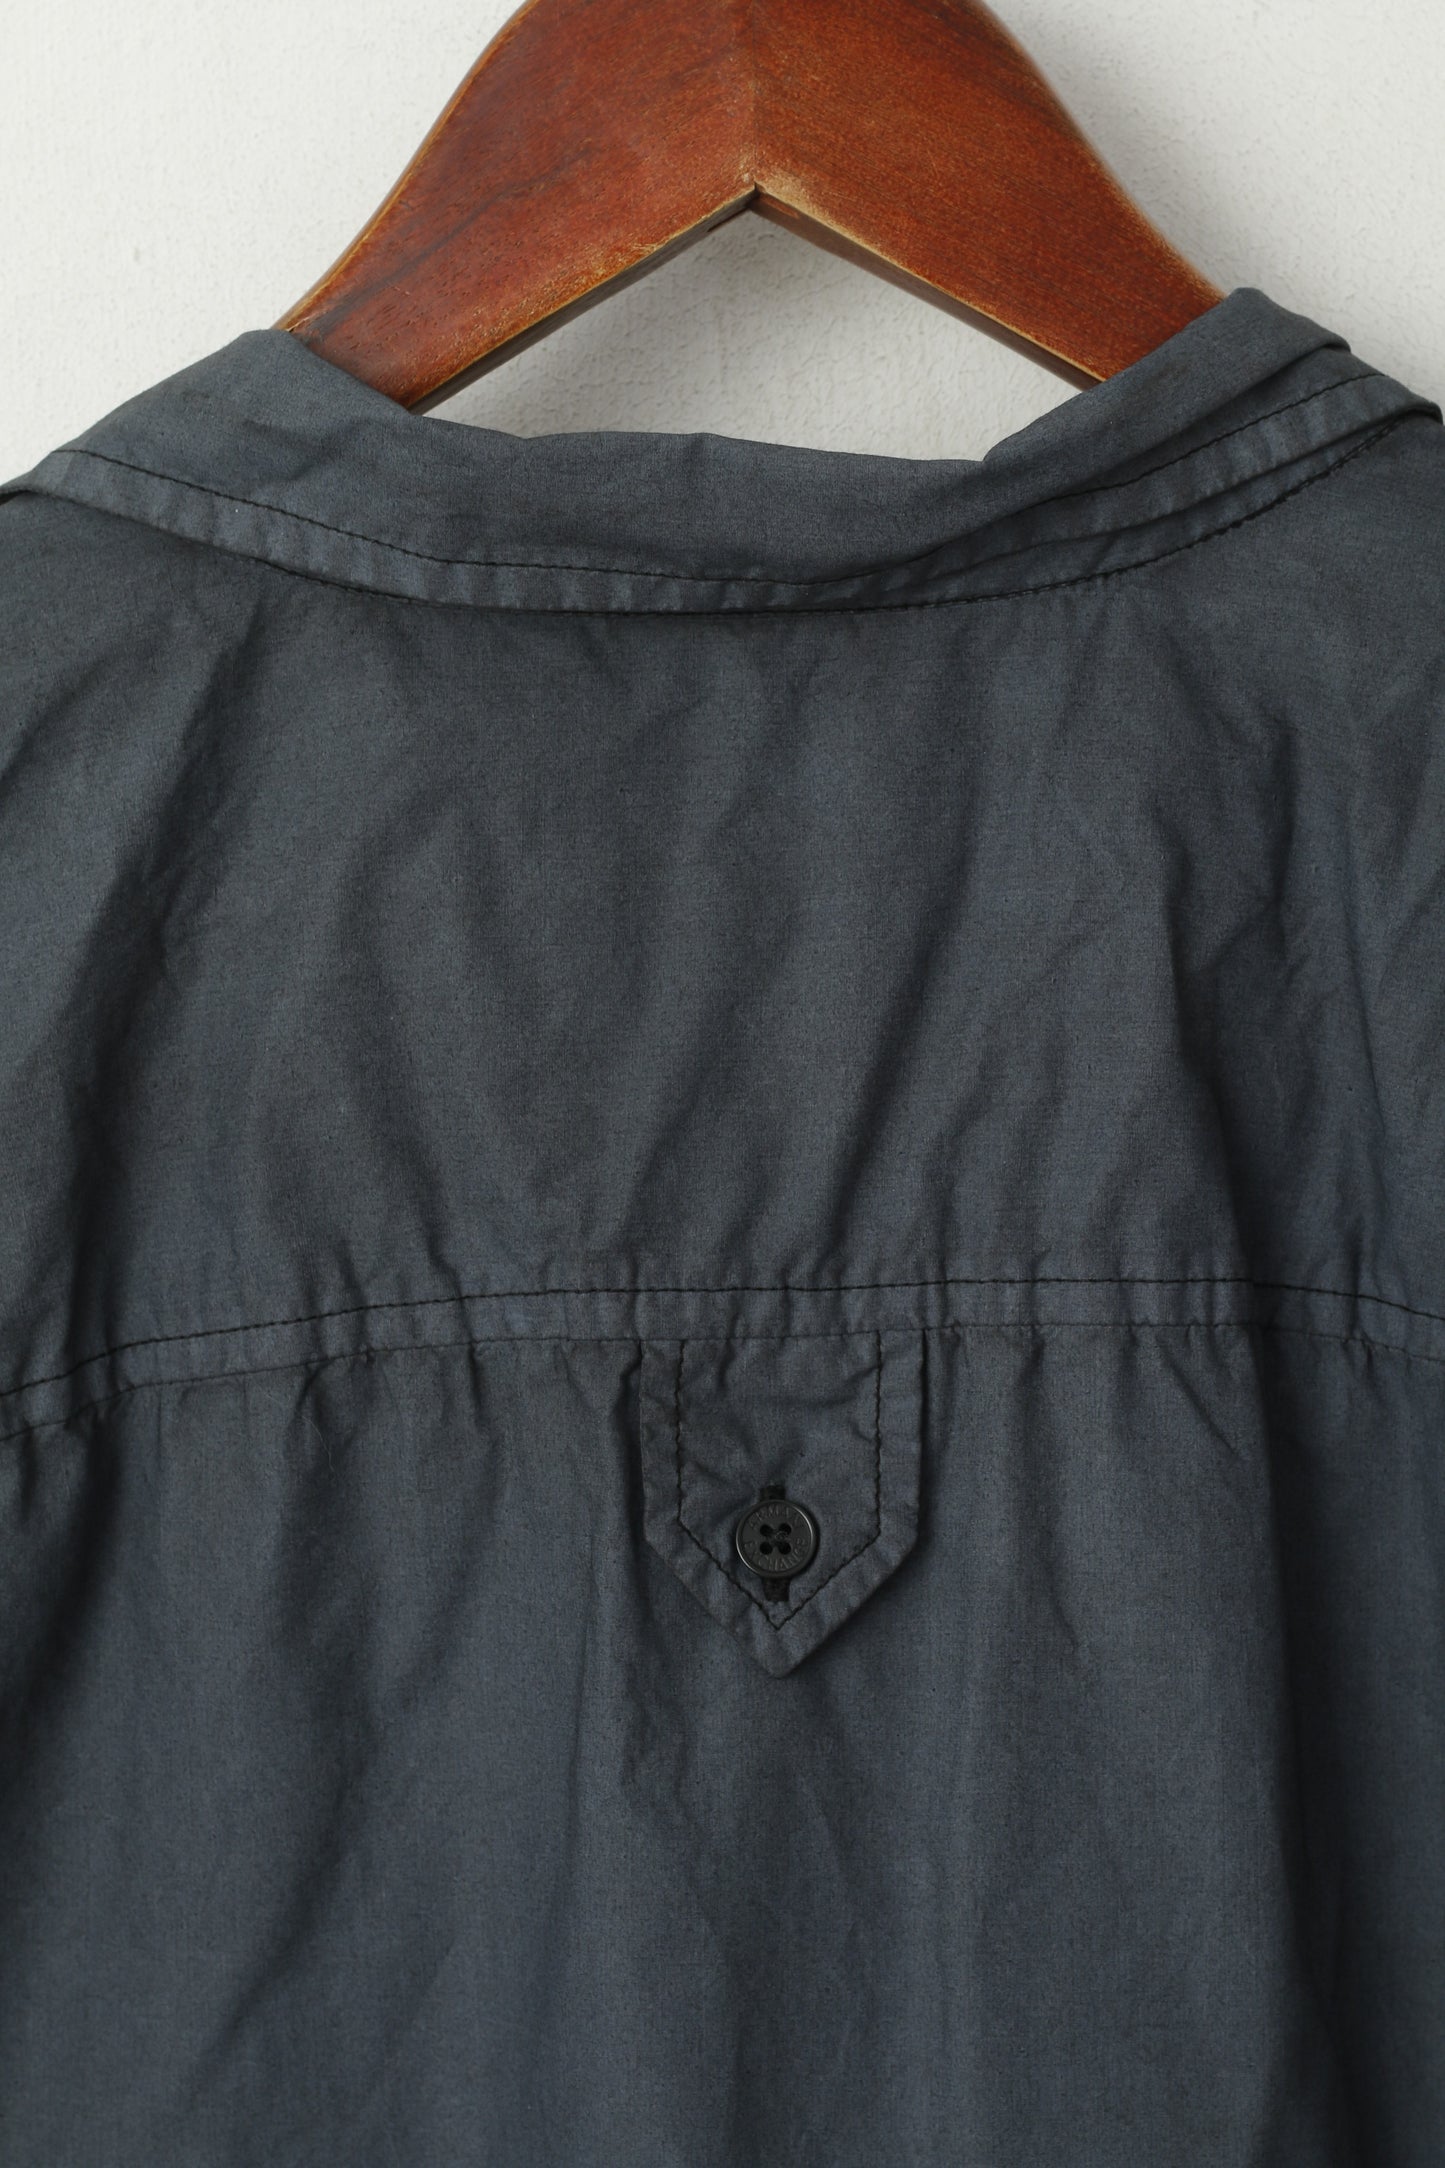 Armani Exchange Men L Casual Shirt Graphite Cotton Detailed BUtton Short Sleeve Top